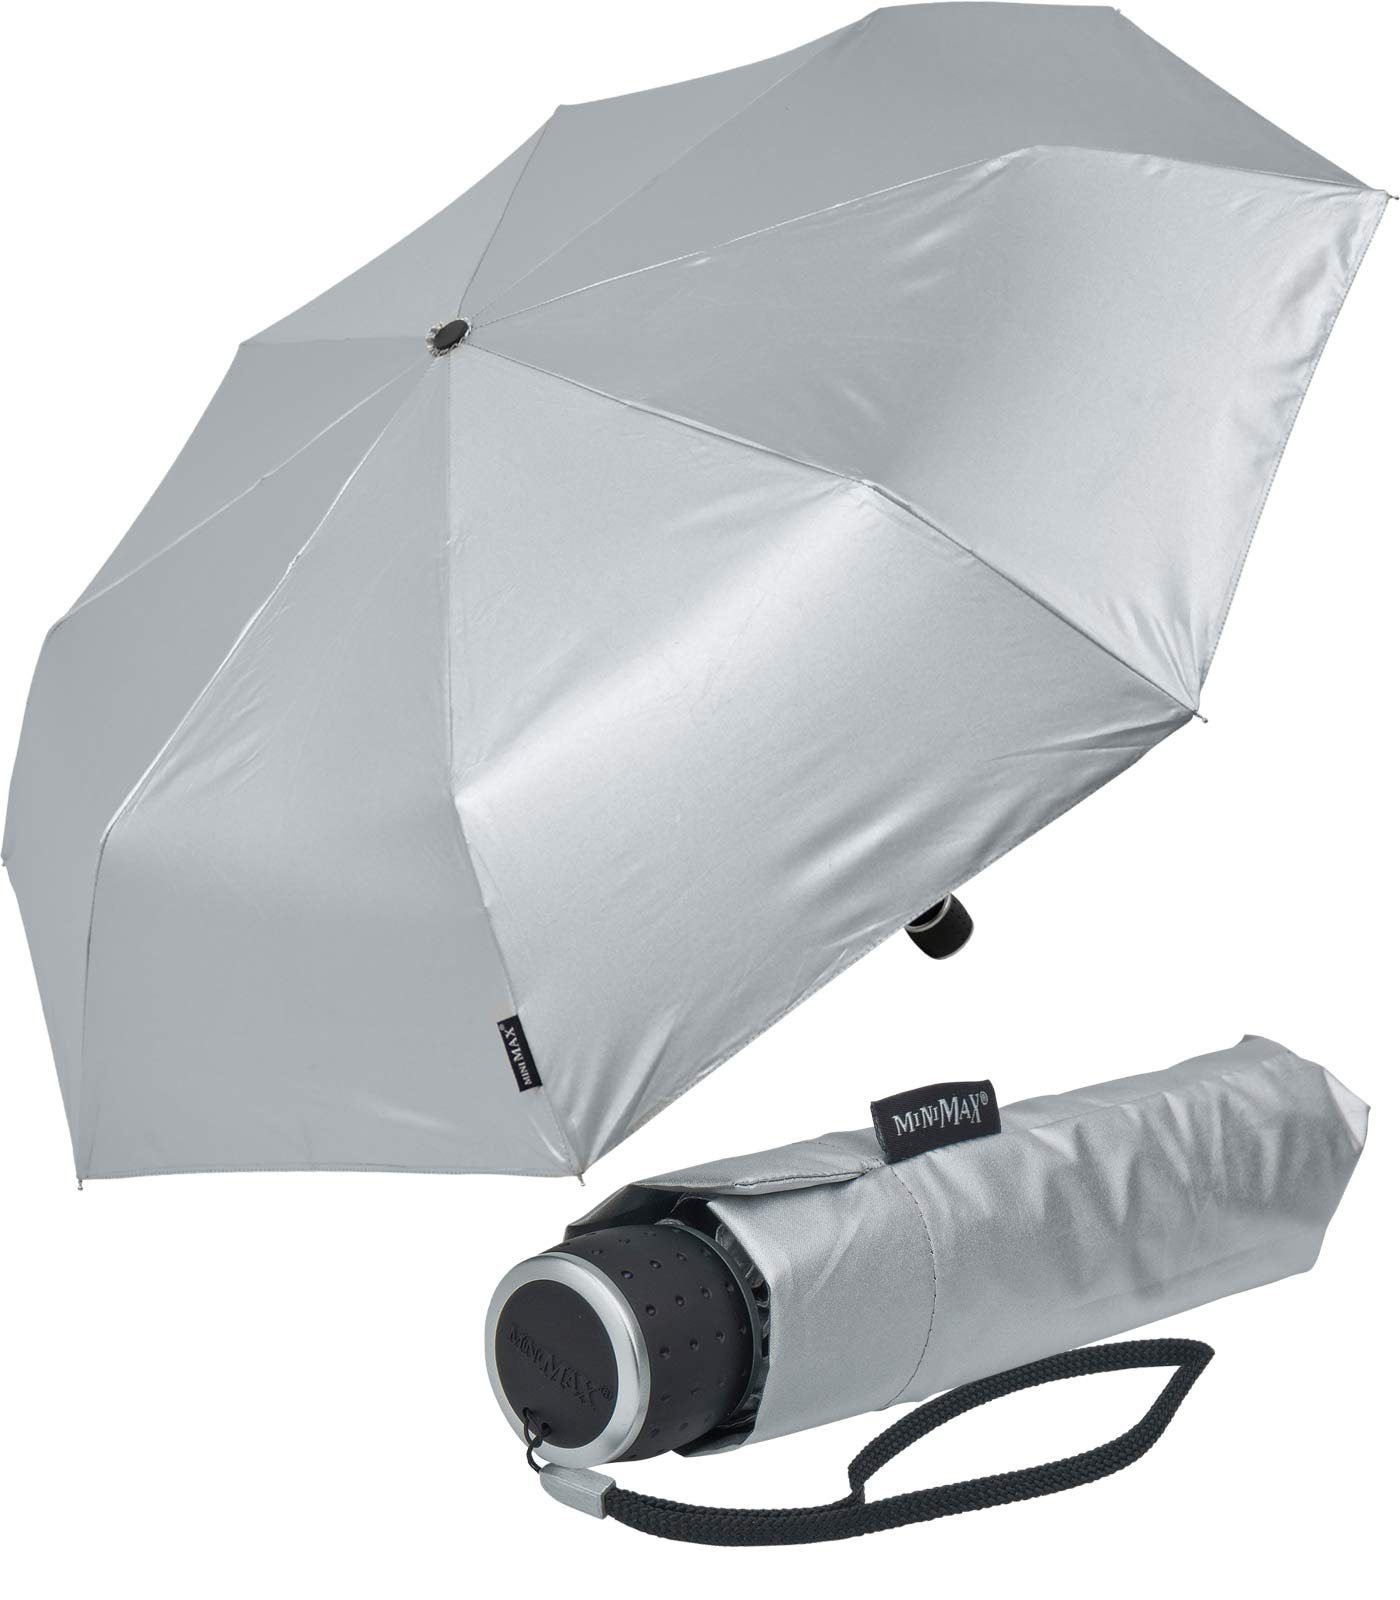 passt Handöffner, Impliva miniMAX® in Taschenregenschirm kleiner silber Schirm leichter jjede Tasche